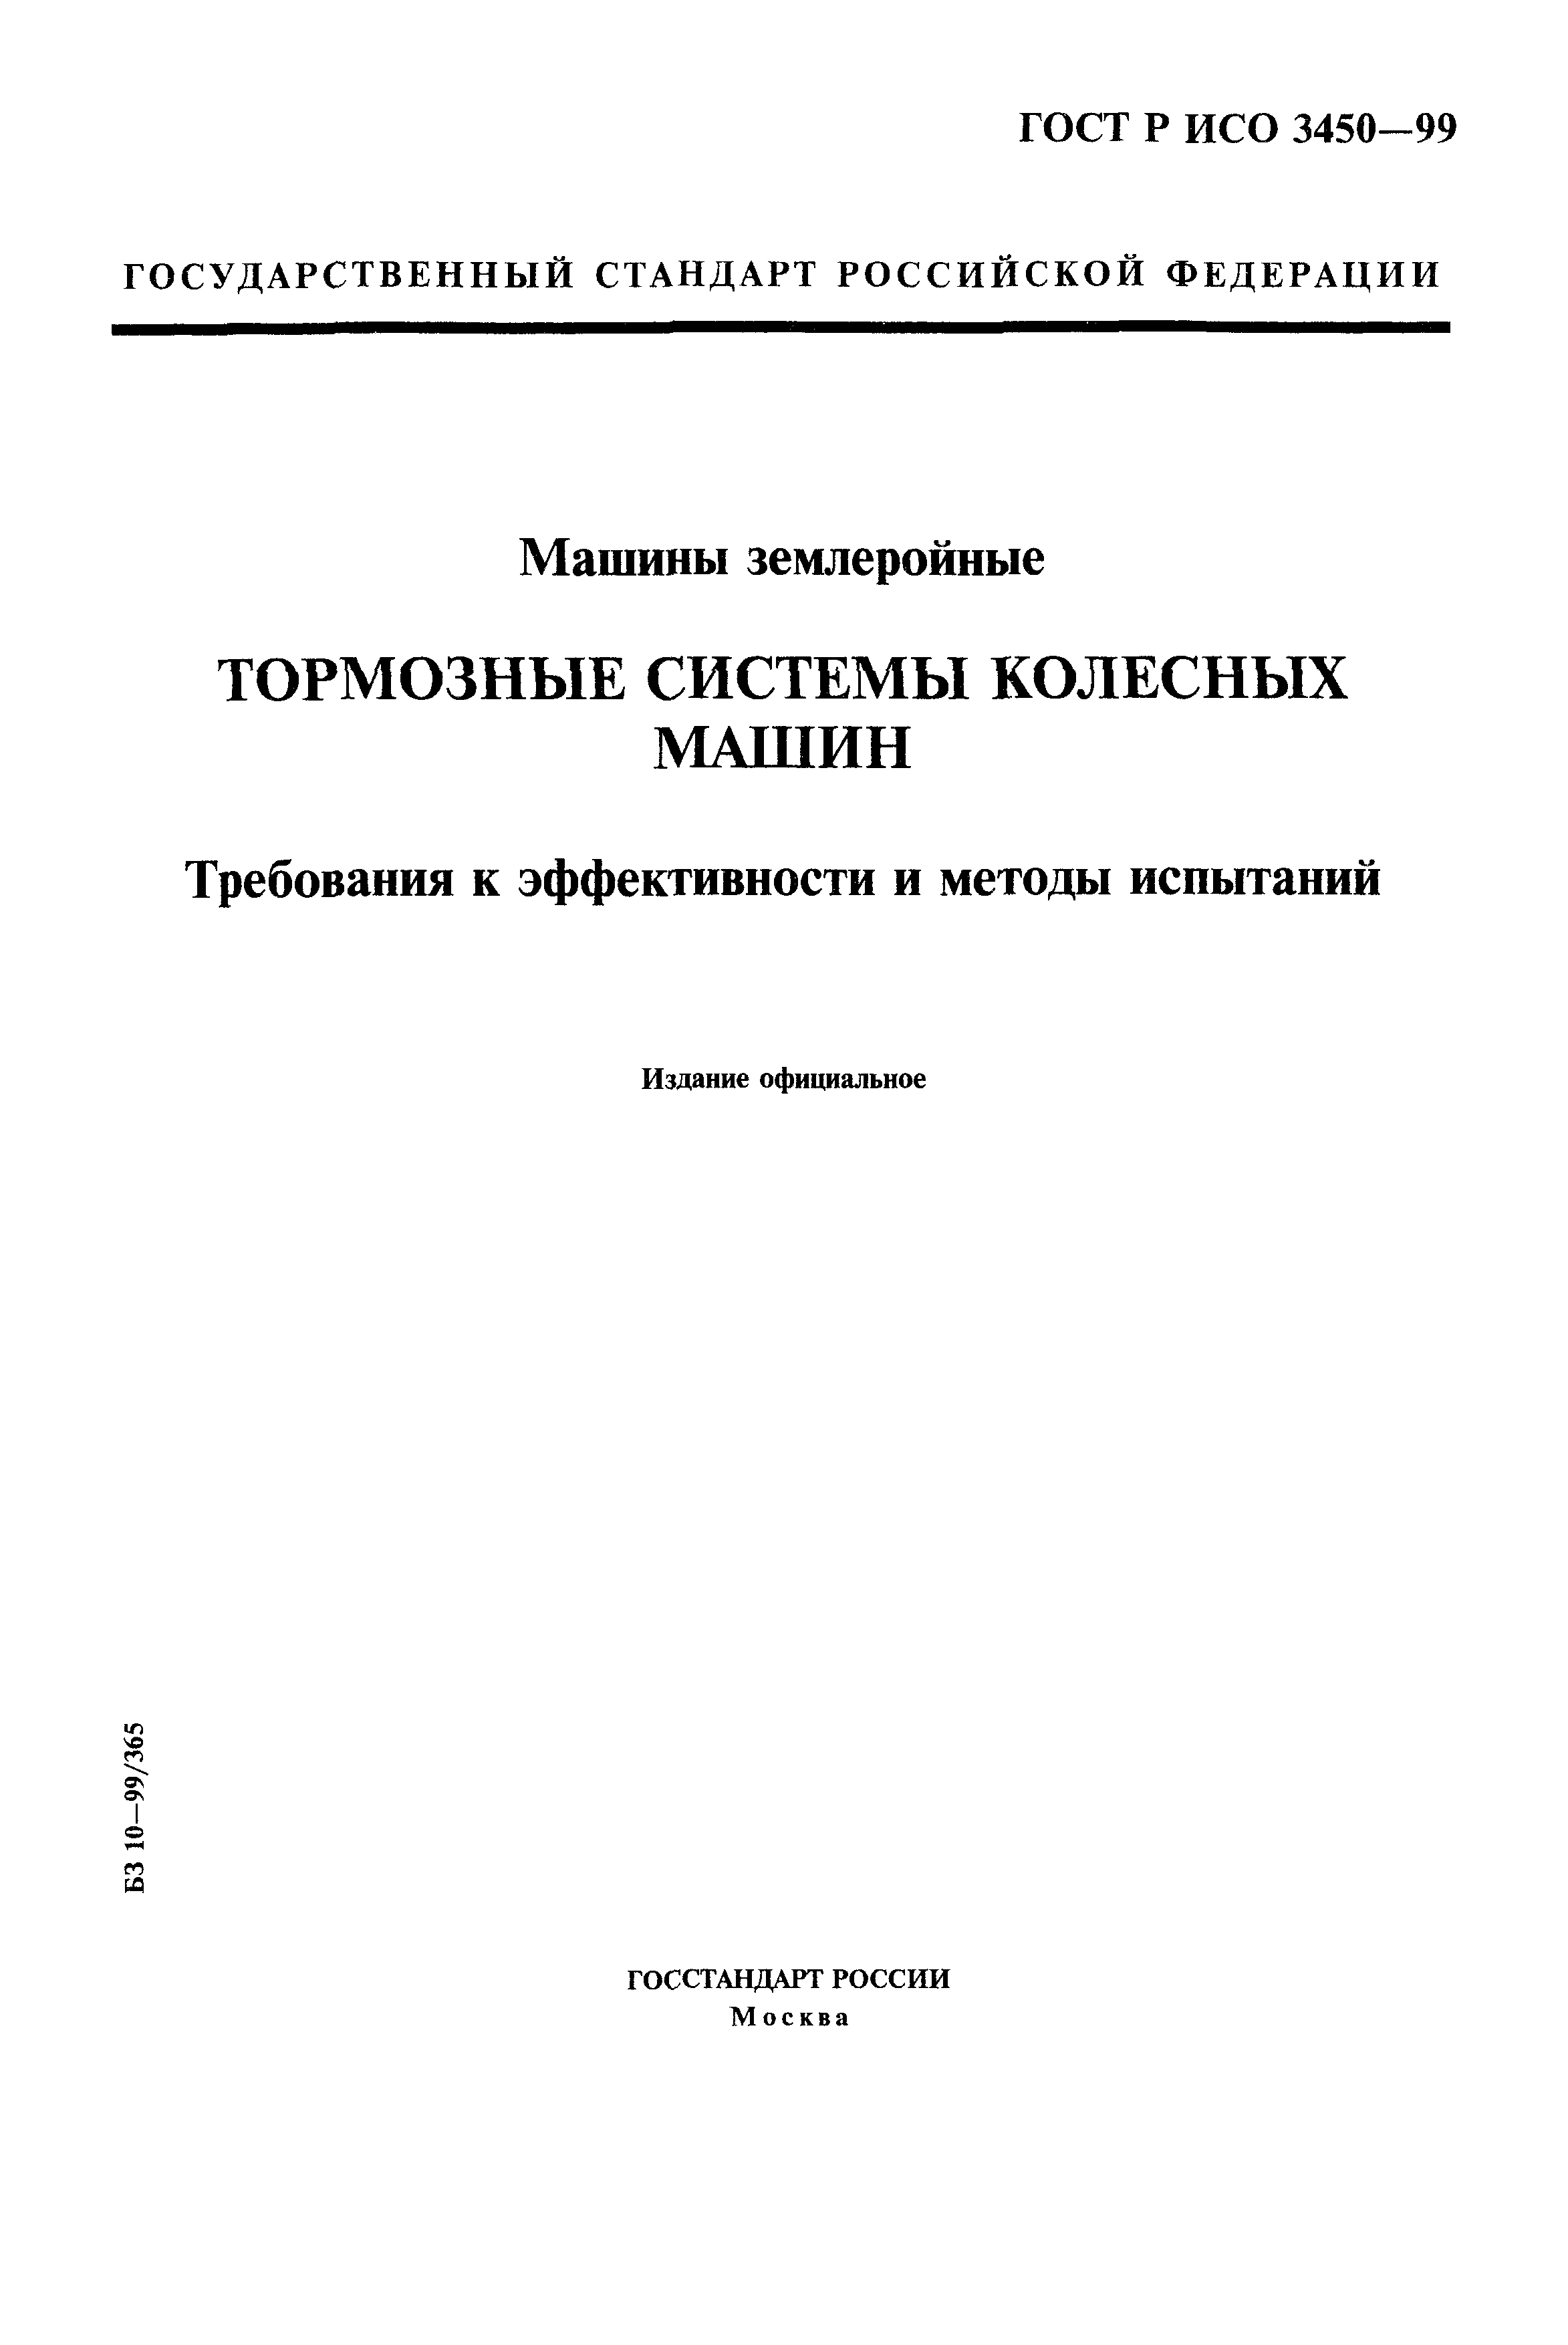 ГОСТ Р ИСО 3450-99